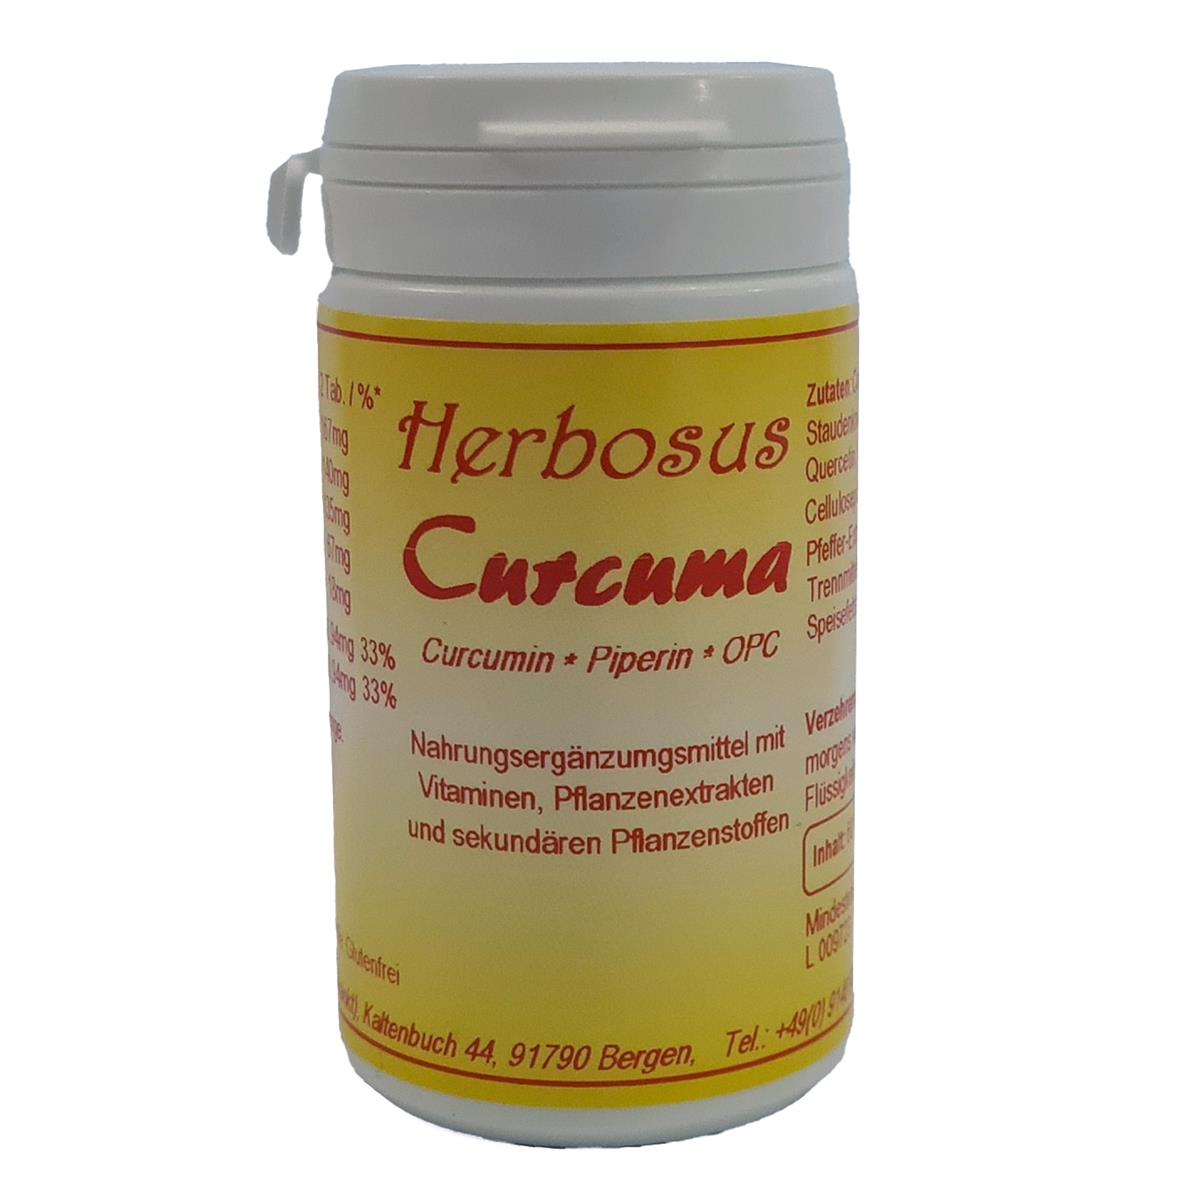 Curcuma - Curcumin - Piperin - OPC von Herbosus